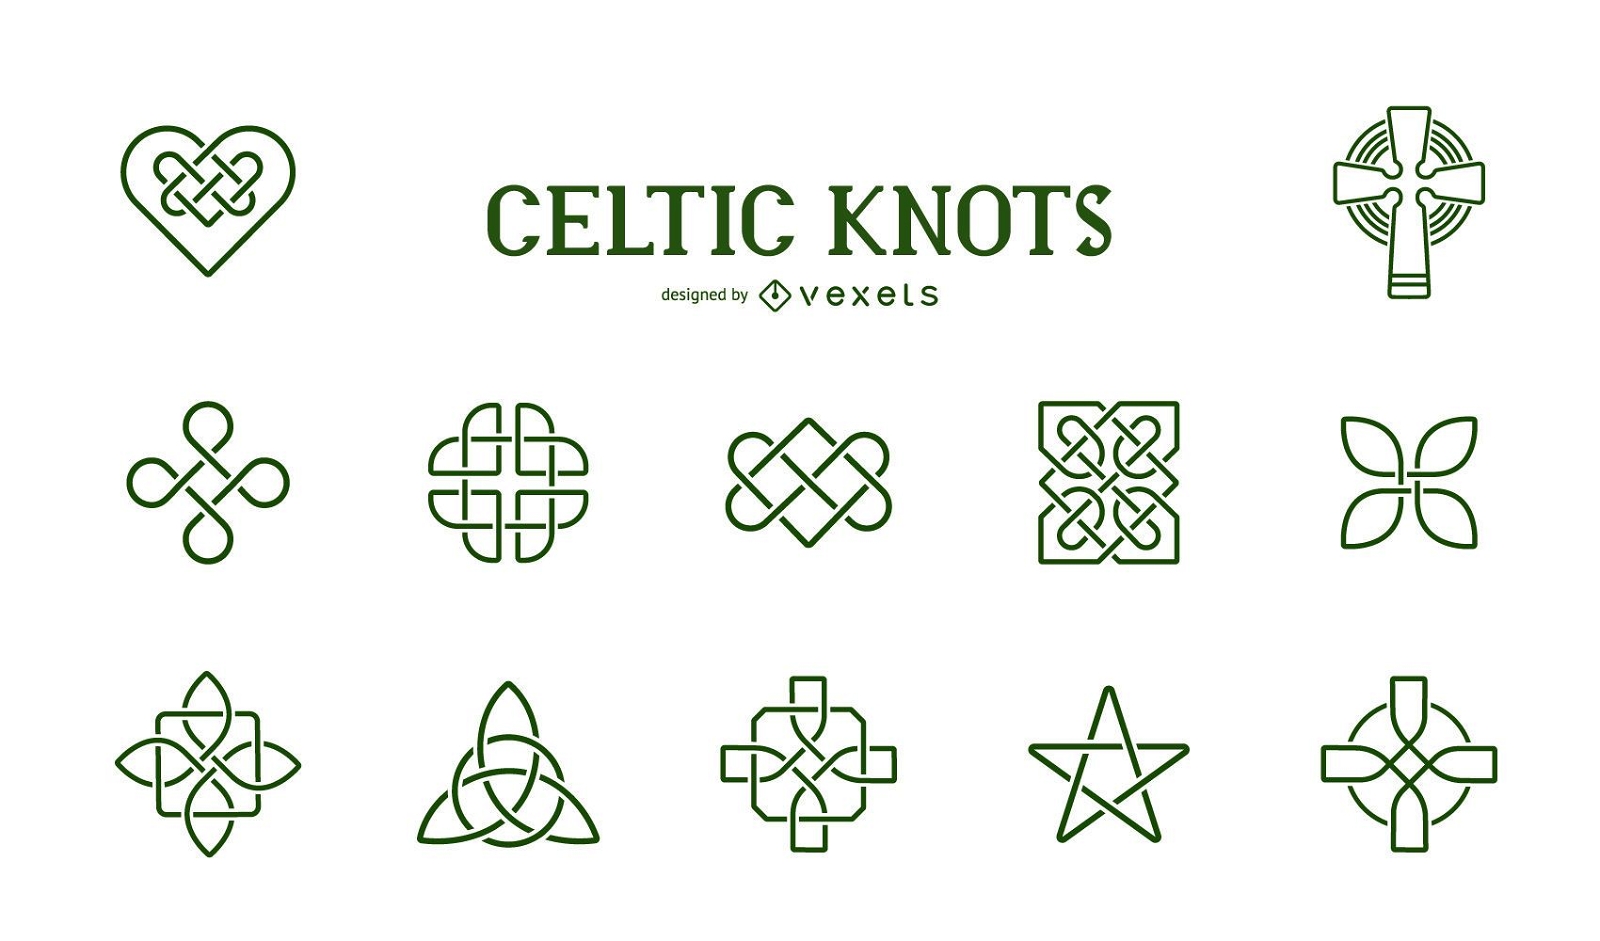 Coleção de símbolos de nós celtas